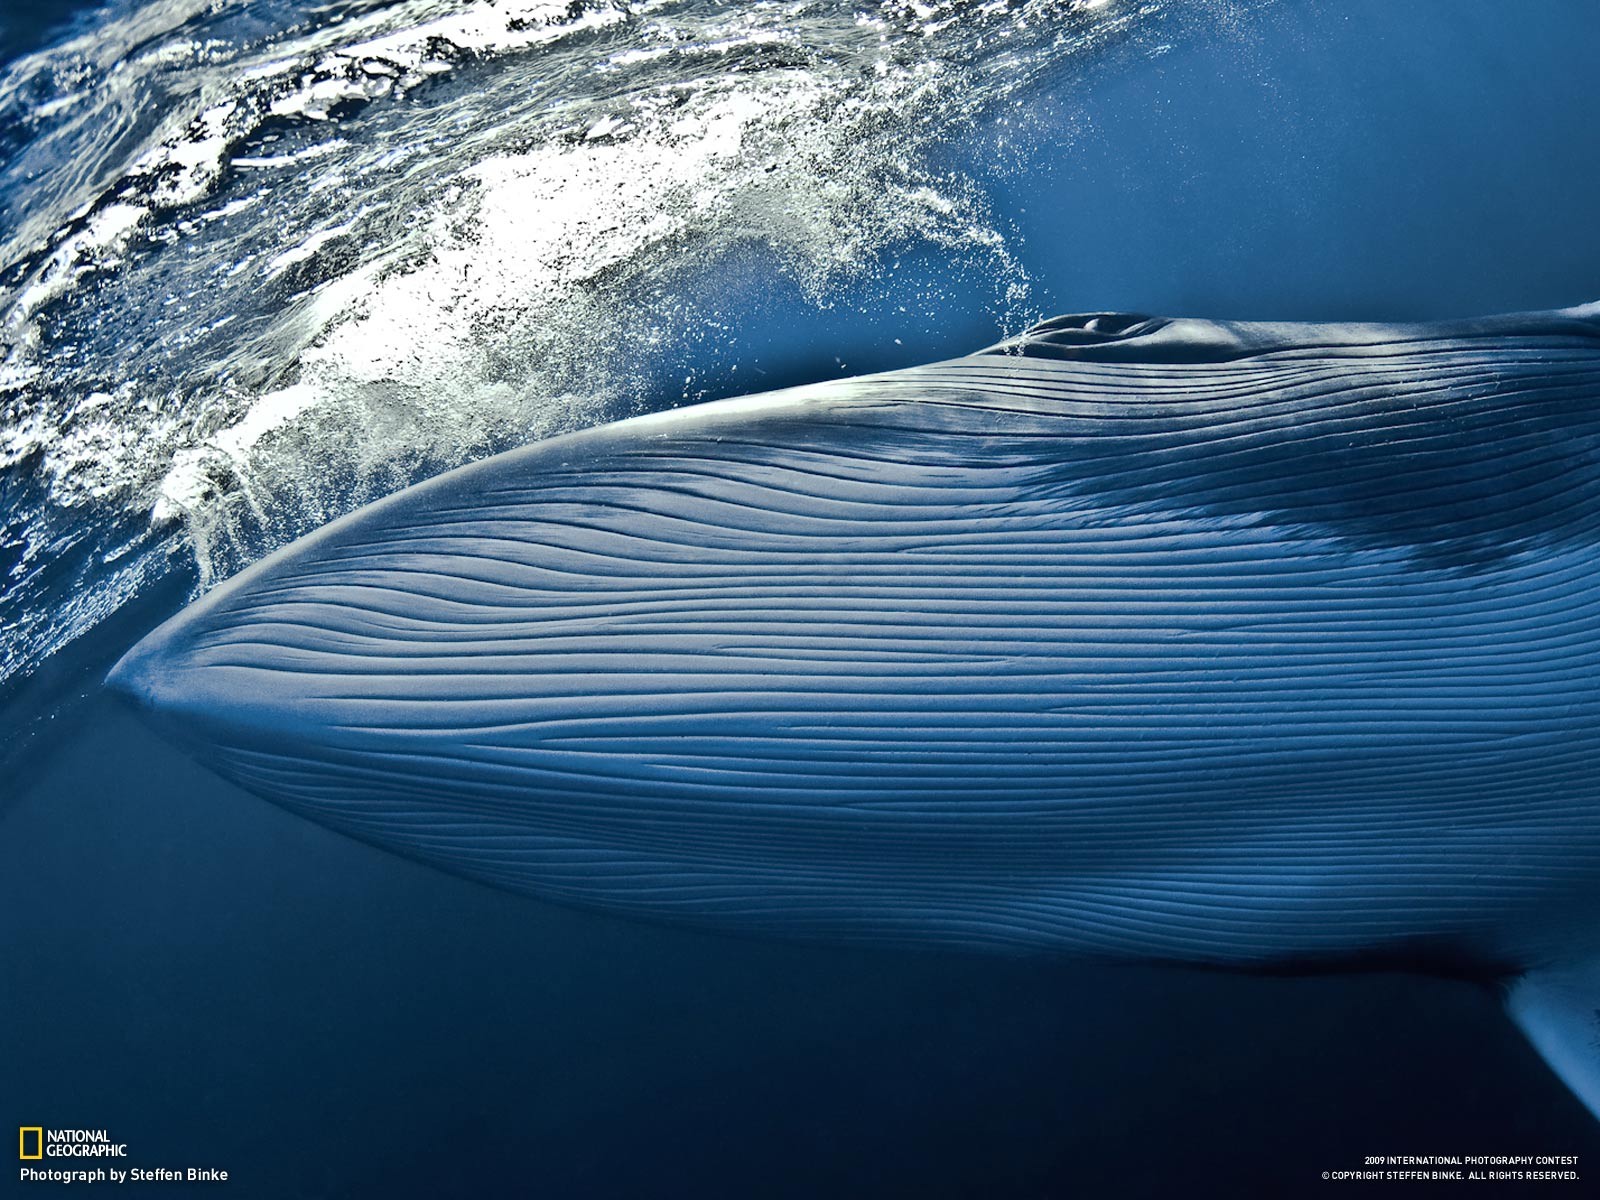 General 1600x1200 nature whale National Geographic animals blue mammals underwater 2009 (Year) cetacea blue whale water sea watermarked Steffen Binke